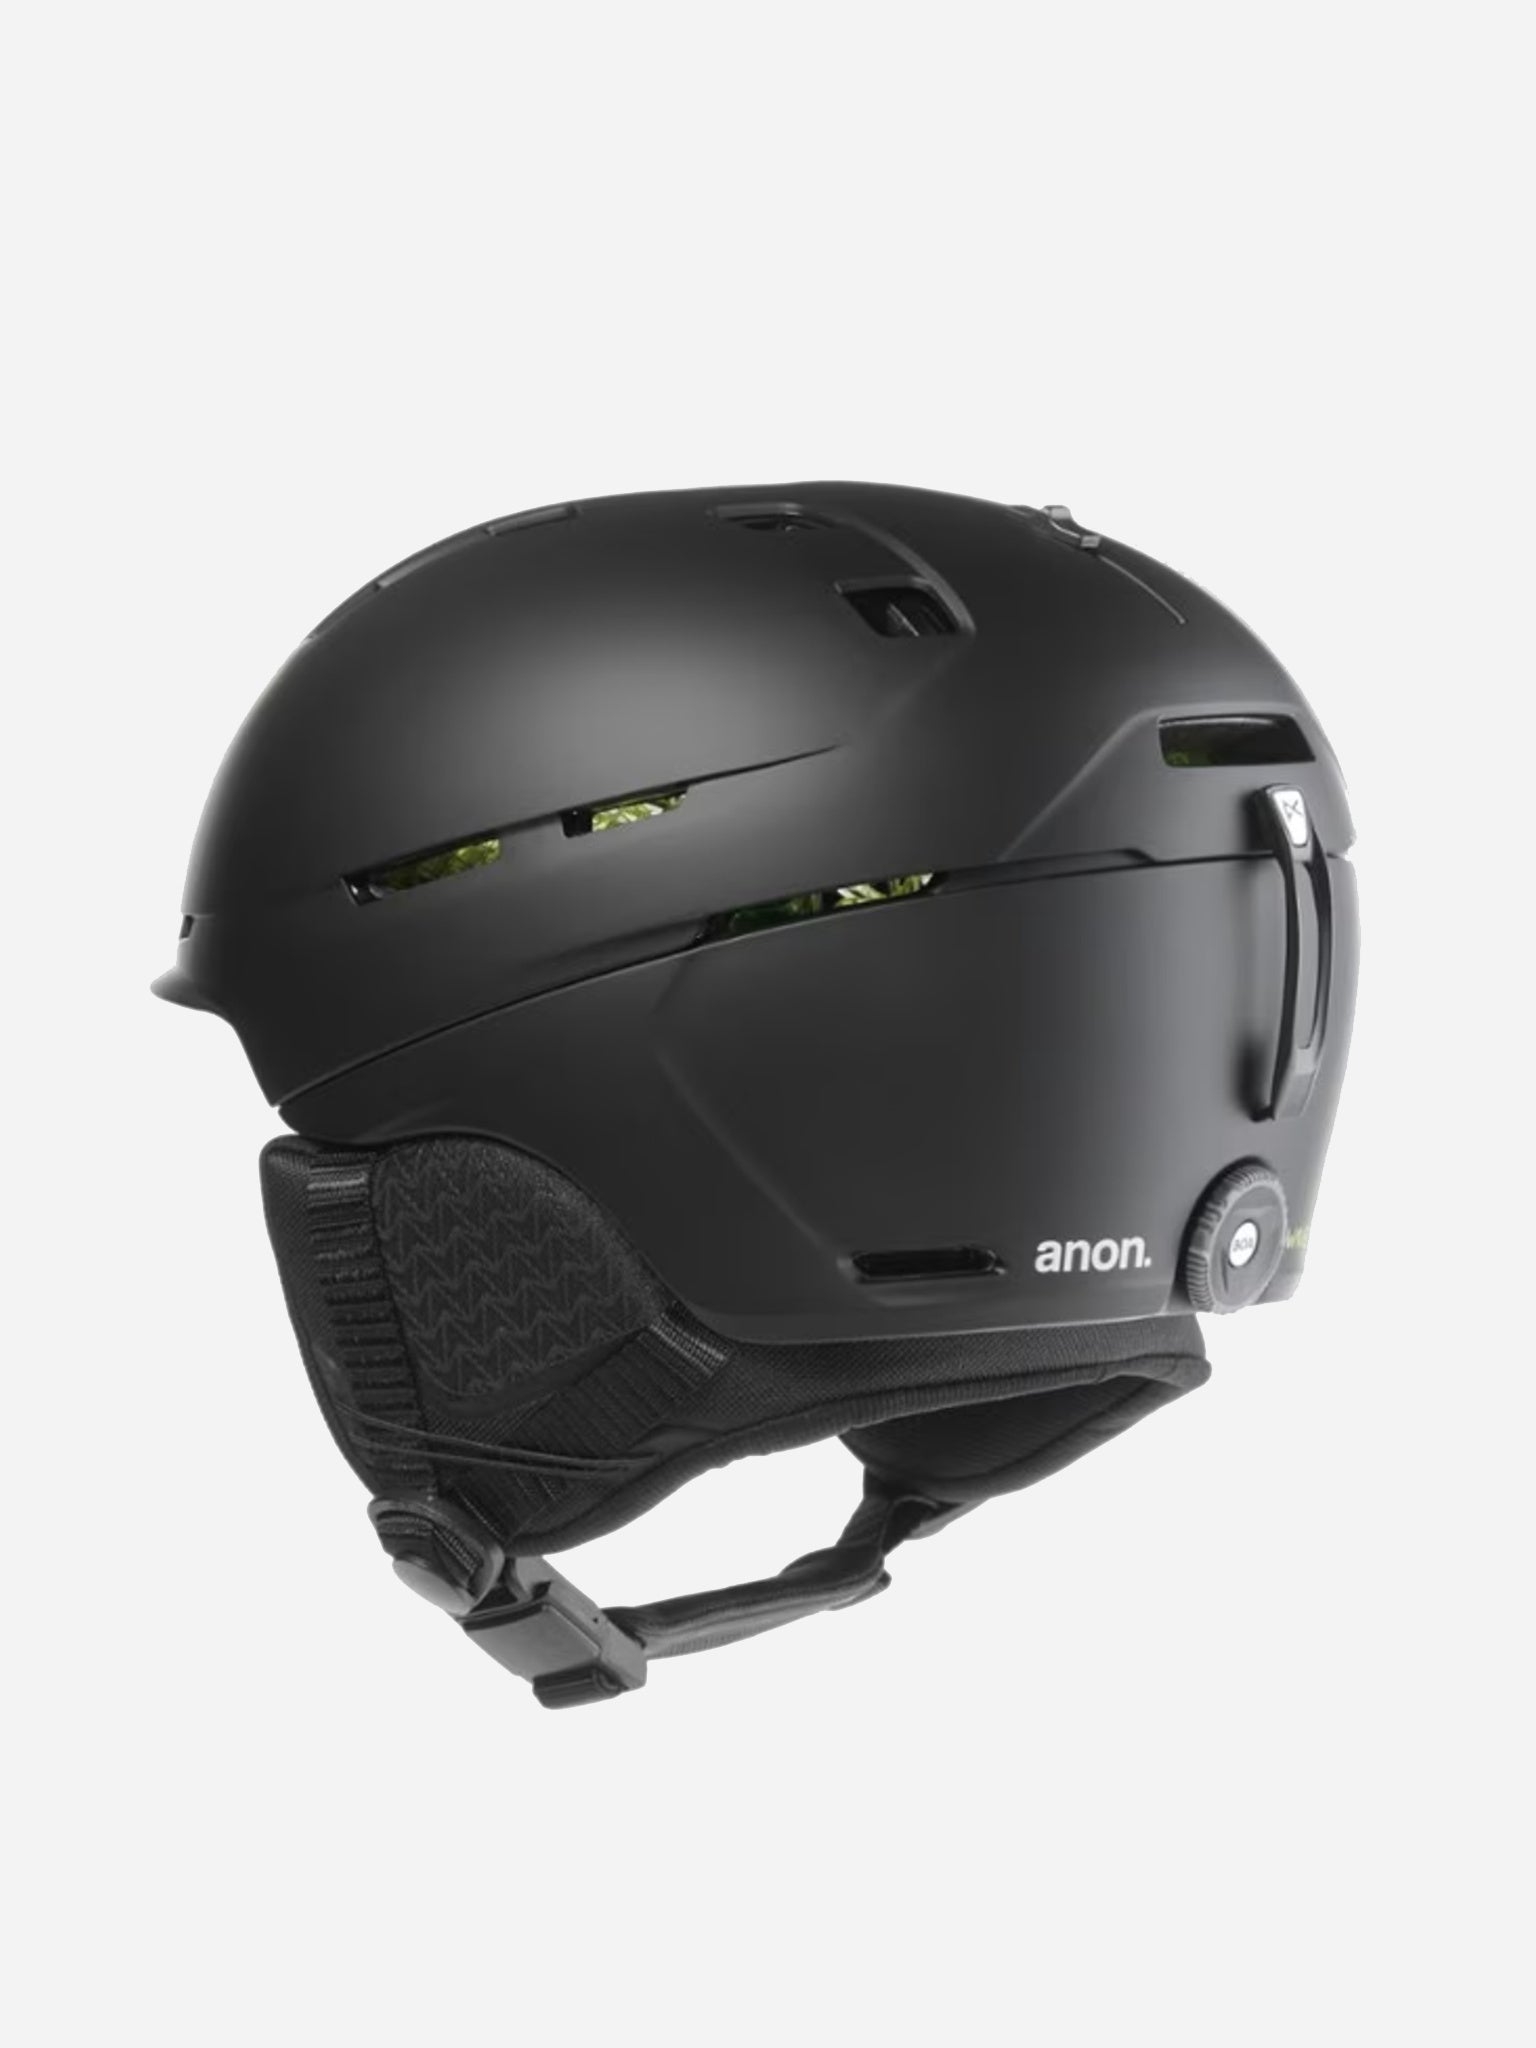 Anon Merak WaveCel Ski/Snowboard Helmet